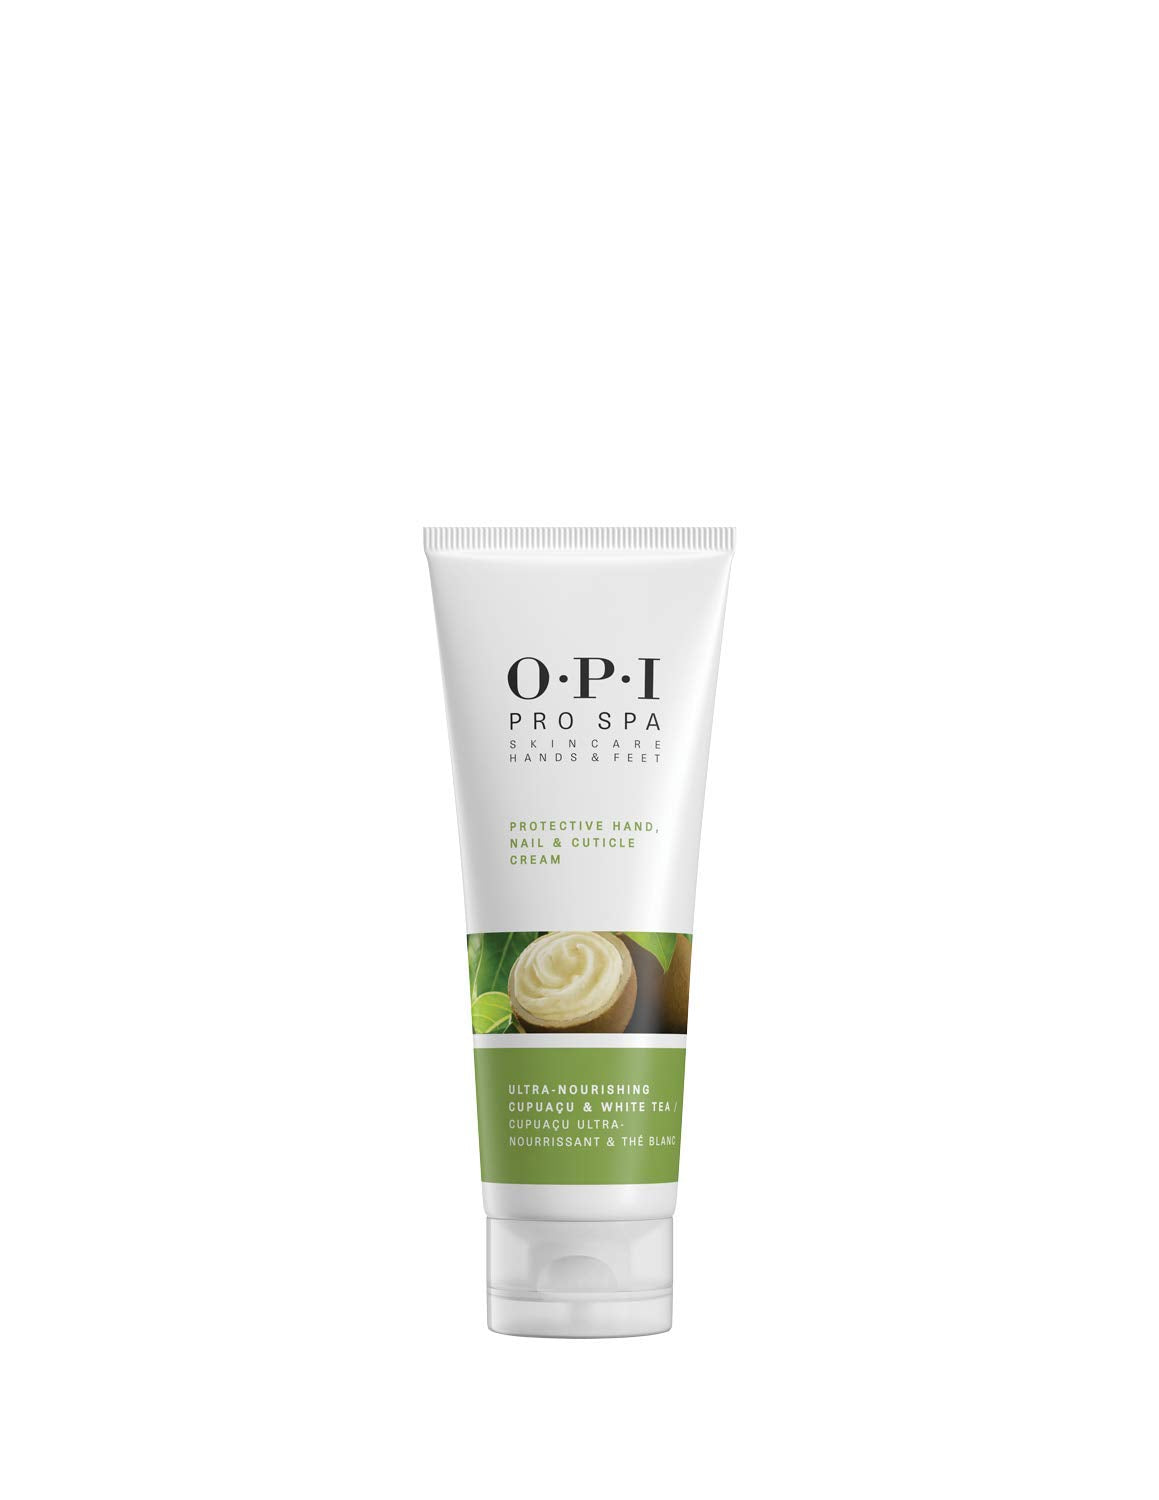 O.P.I ProSpa Protective Hand Nail & Cuticle Cream (236 ml) Beautiful